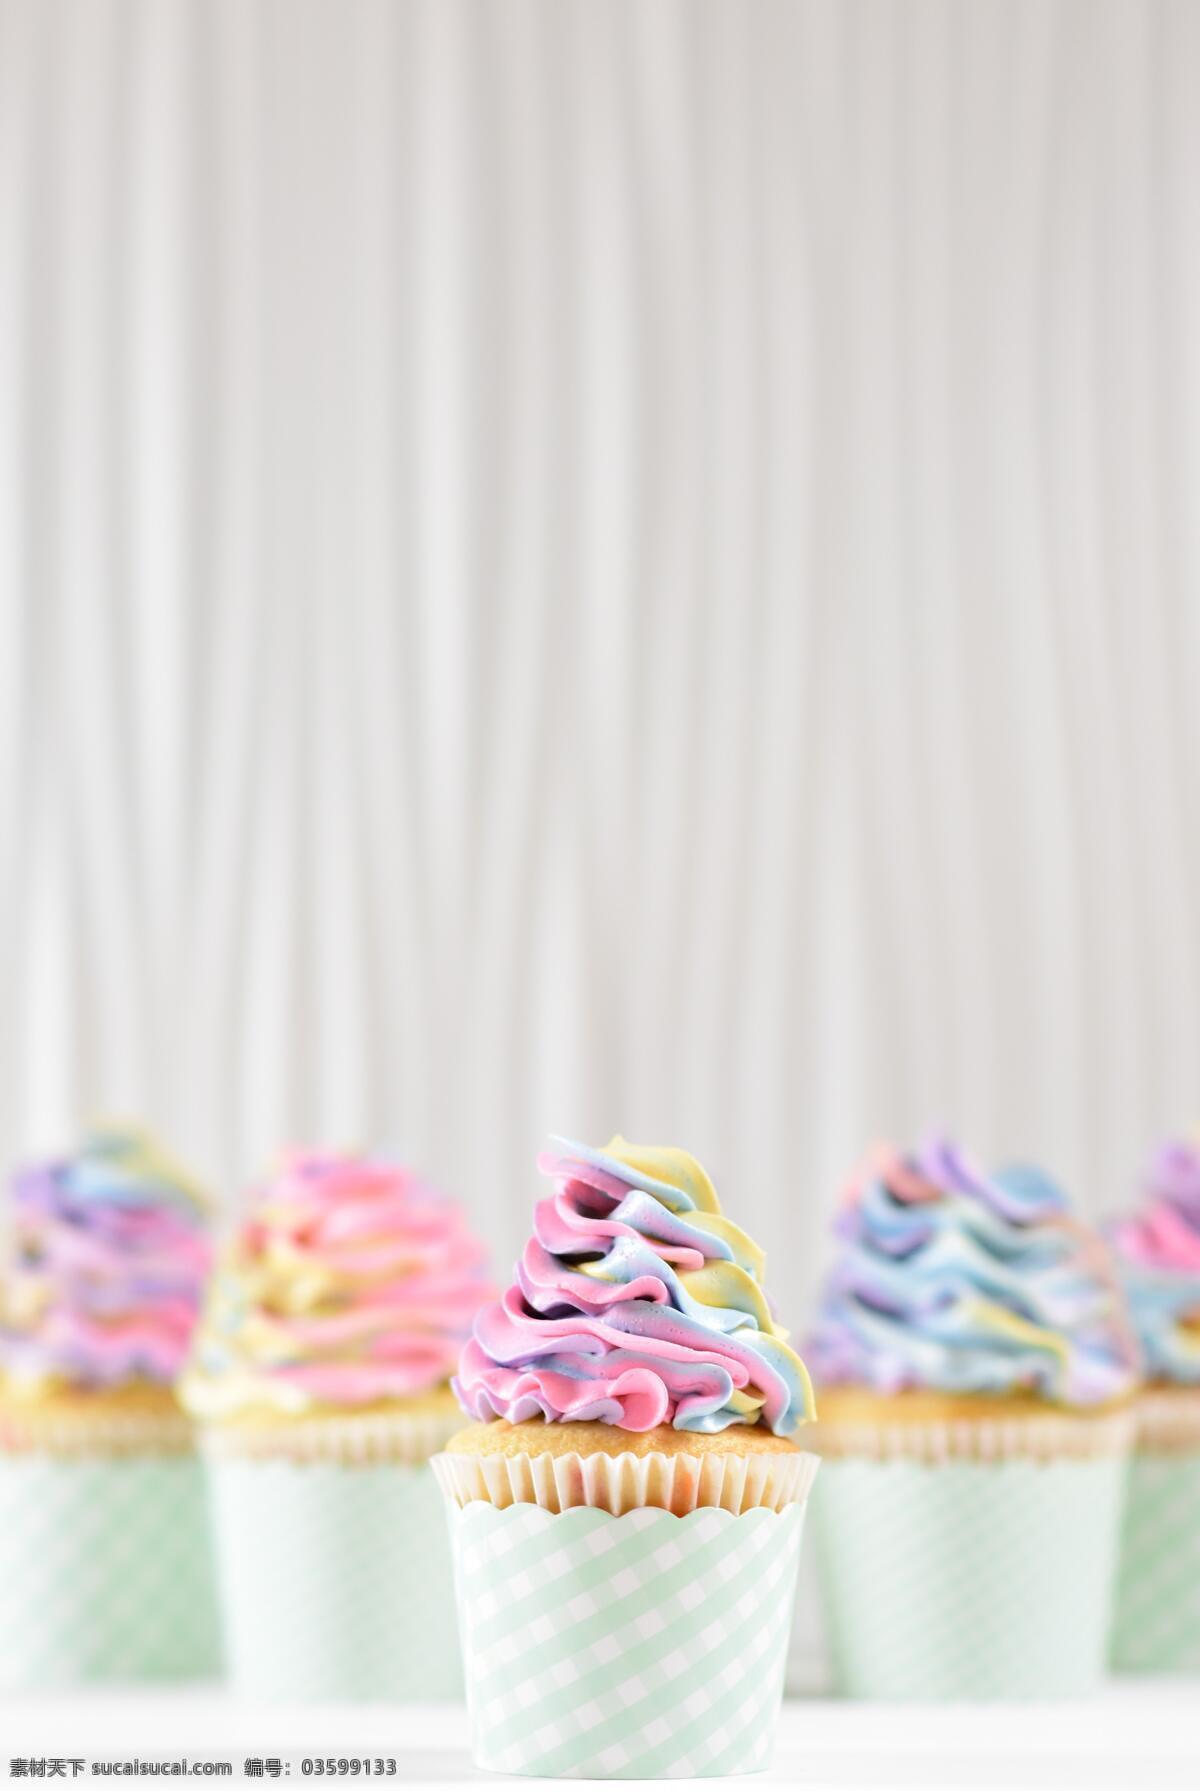 彩虹蛋糕 甜品 甜点 烘焙 彩虹 蛋糕 纸杯蛋糕 餐饮美食 西餐美食